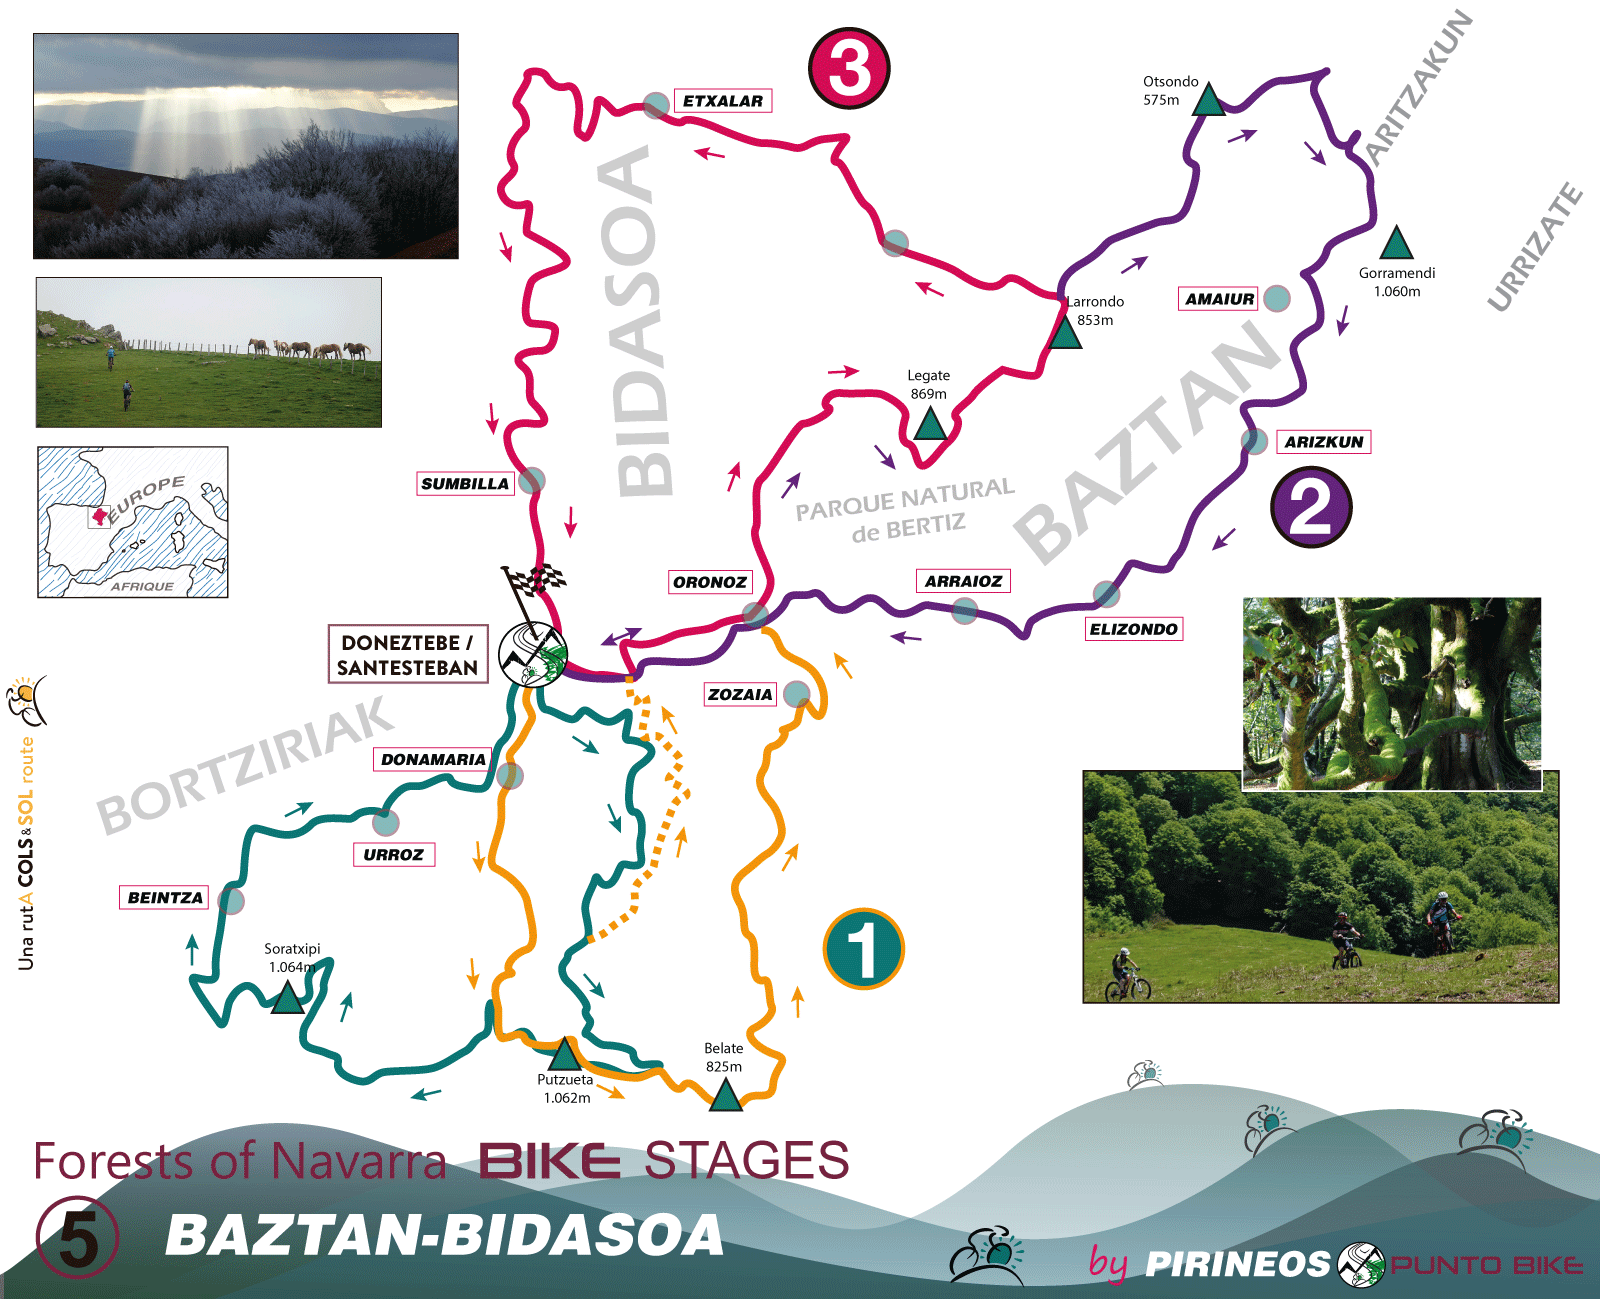 Bosques-de-Navarra-5-Baztan-Bidasoa-Map